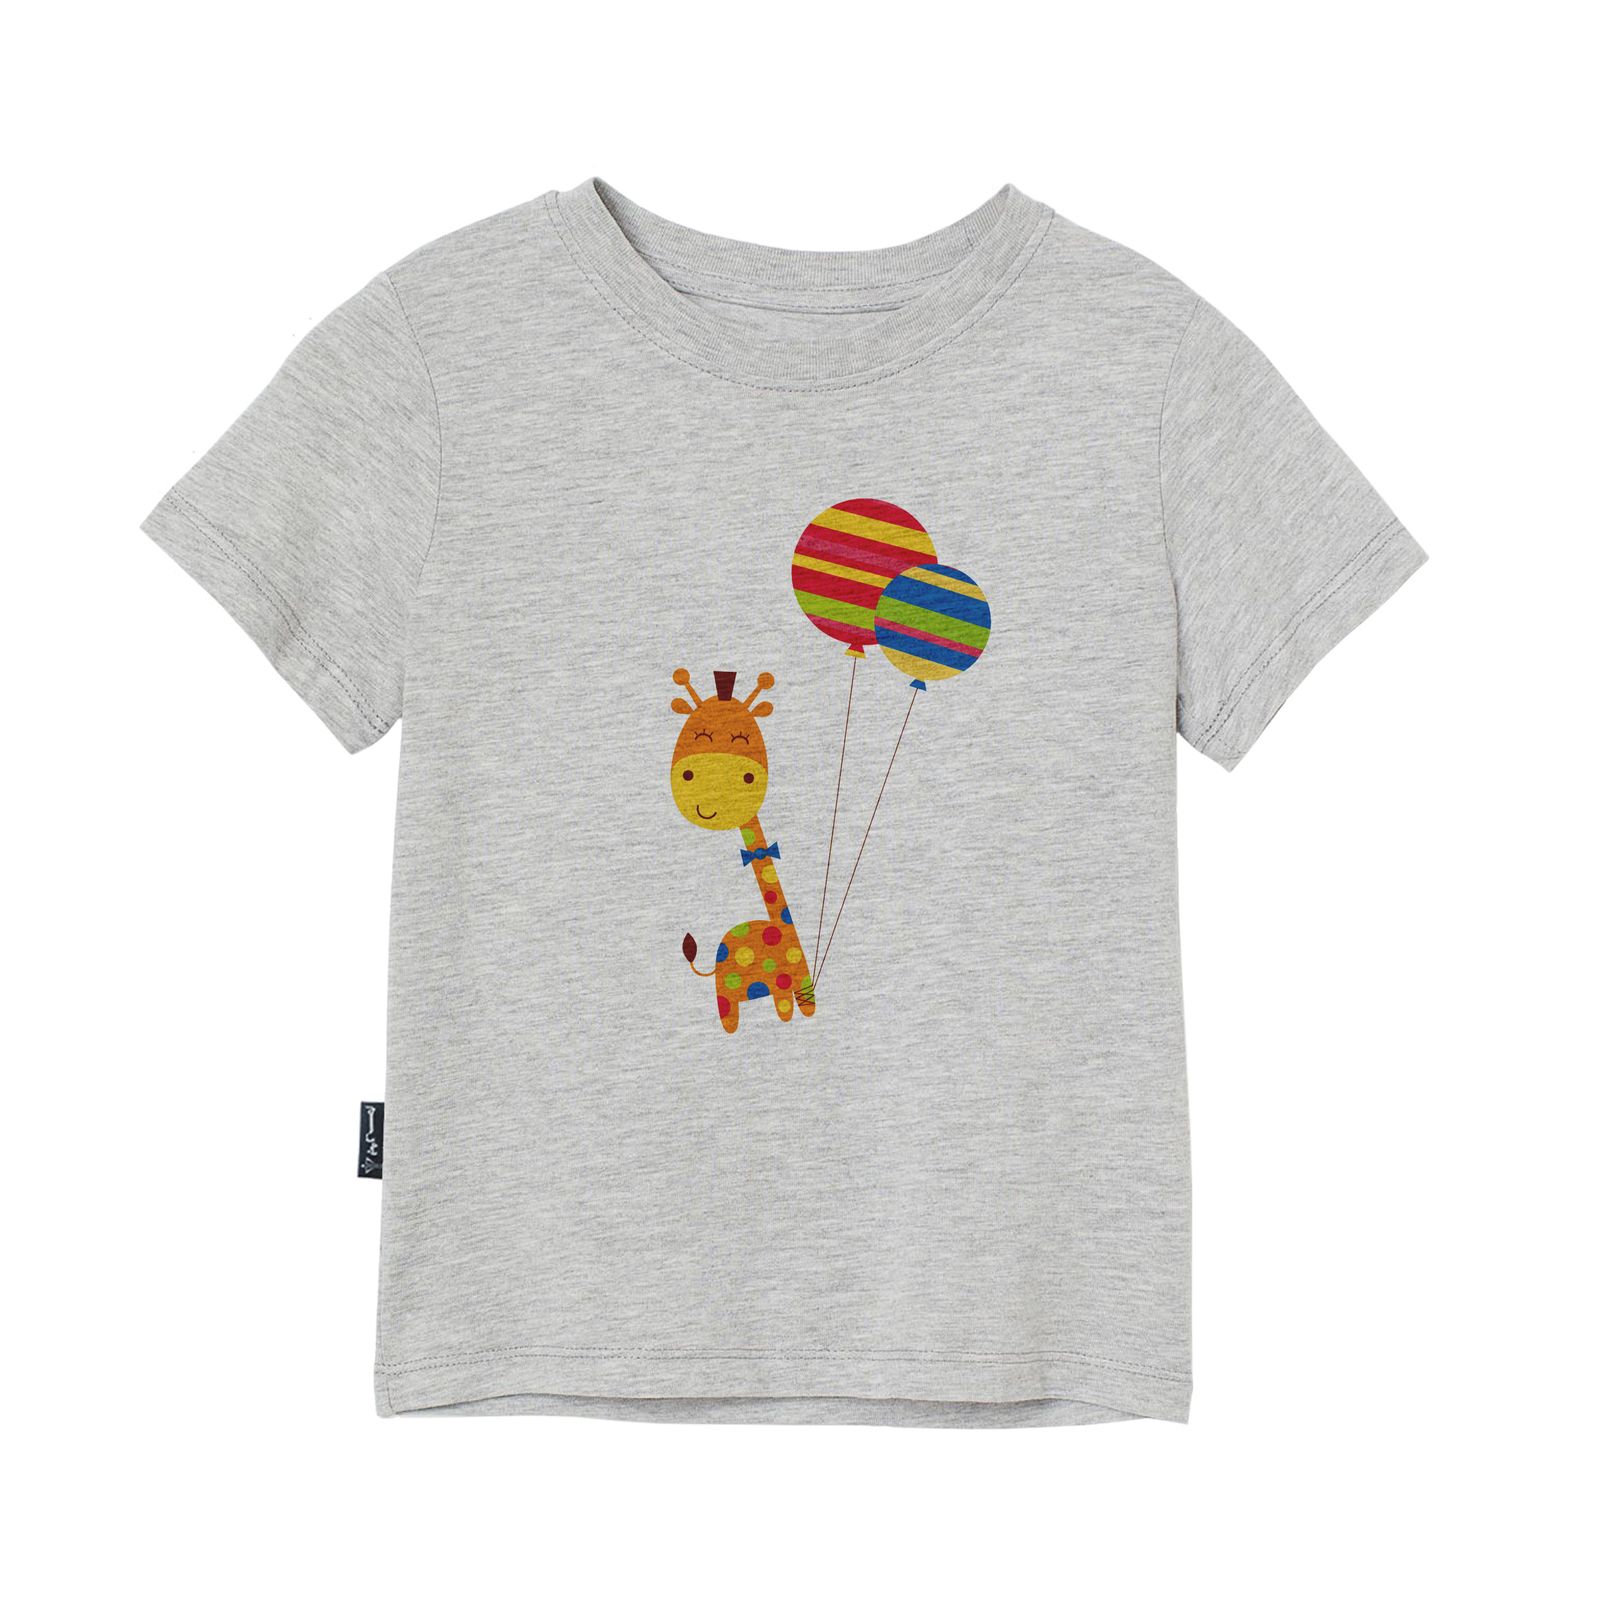 تی شرت آستین کوتاه دخترانه به رسم مدل زرافه و بادکنک کد 1114 -  - 1